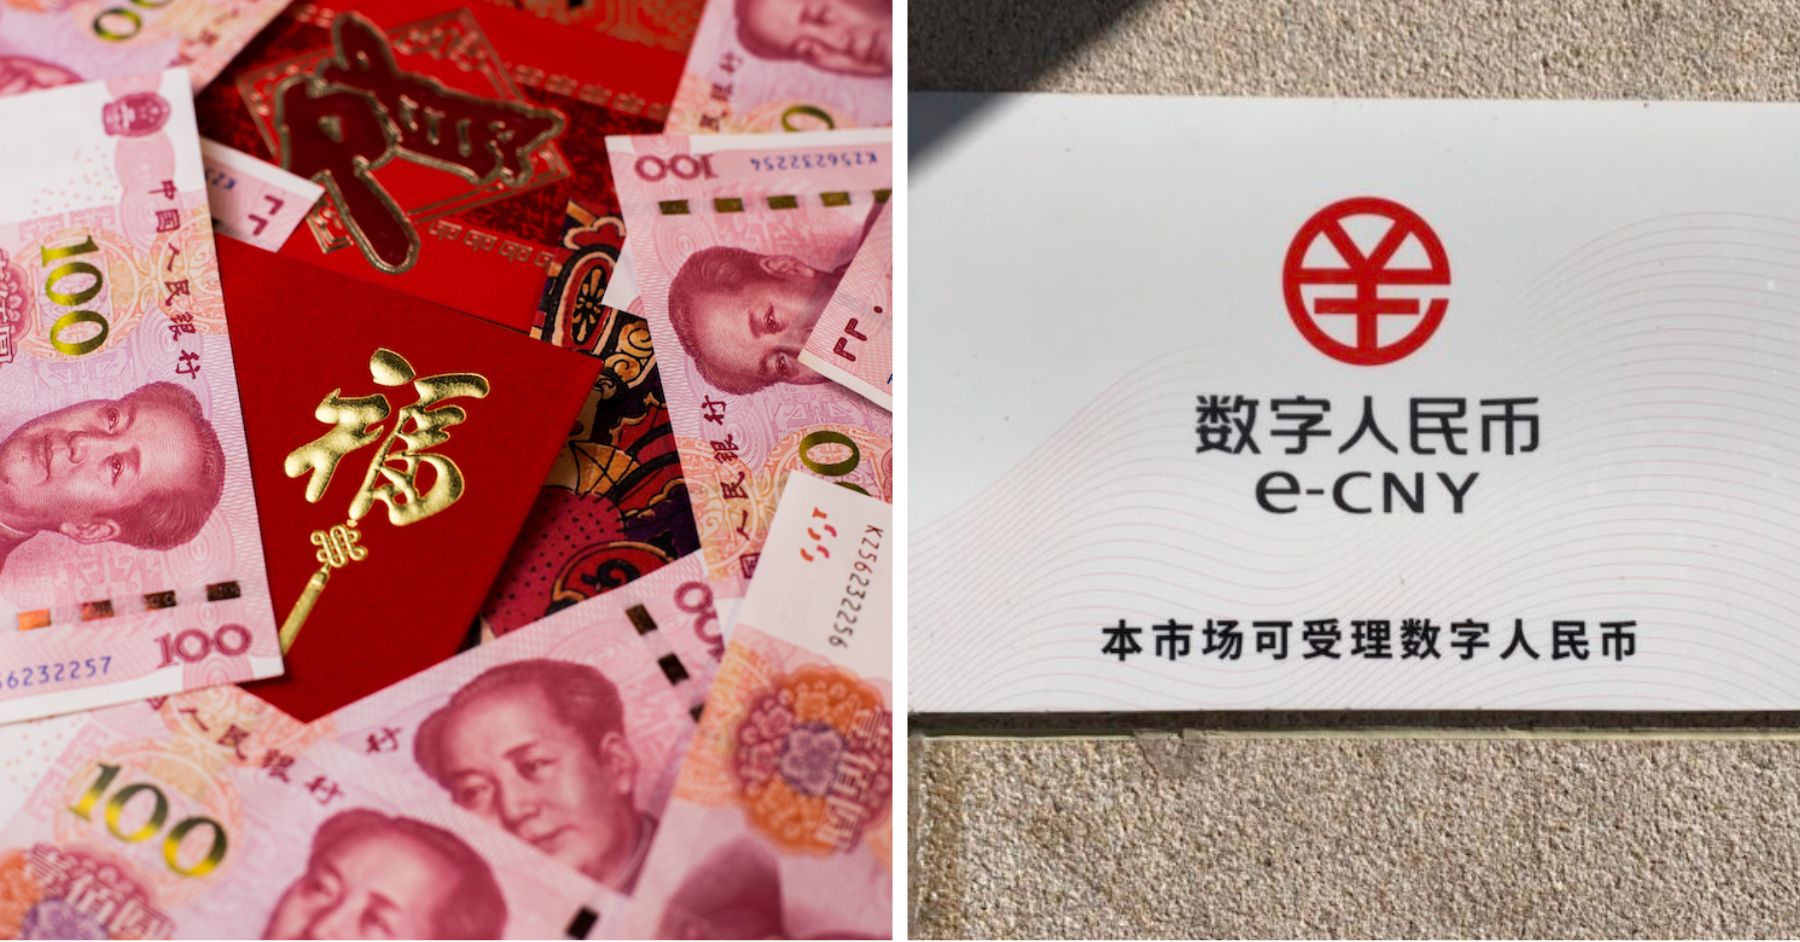 Lo yuan digitale cinese ha bisogno di WeChat e Alipay per aumentare l'adozione, affermano gli esperti